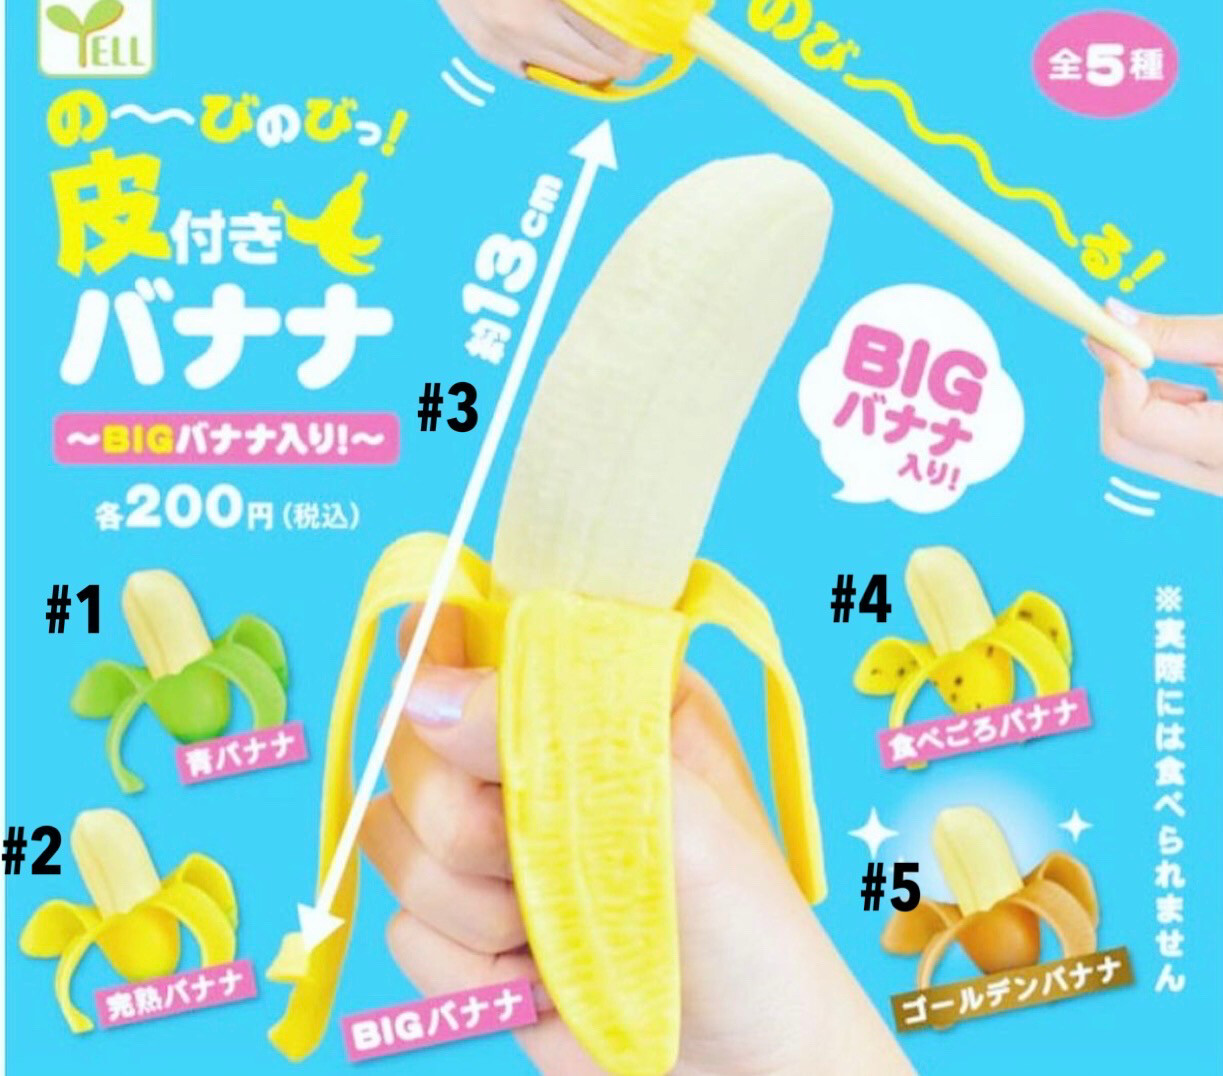 Yell Banana Squishy Toy